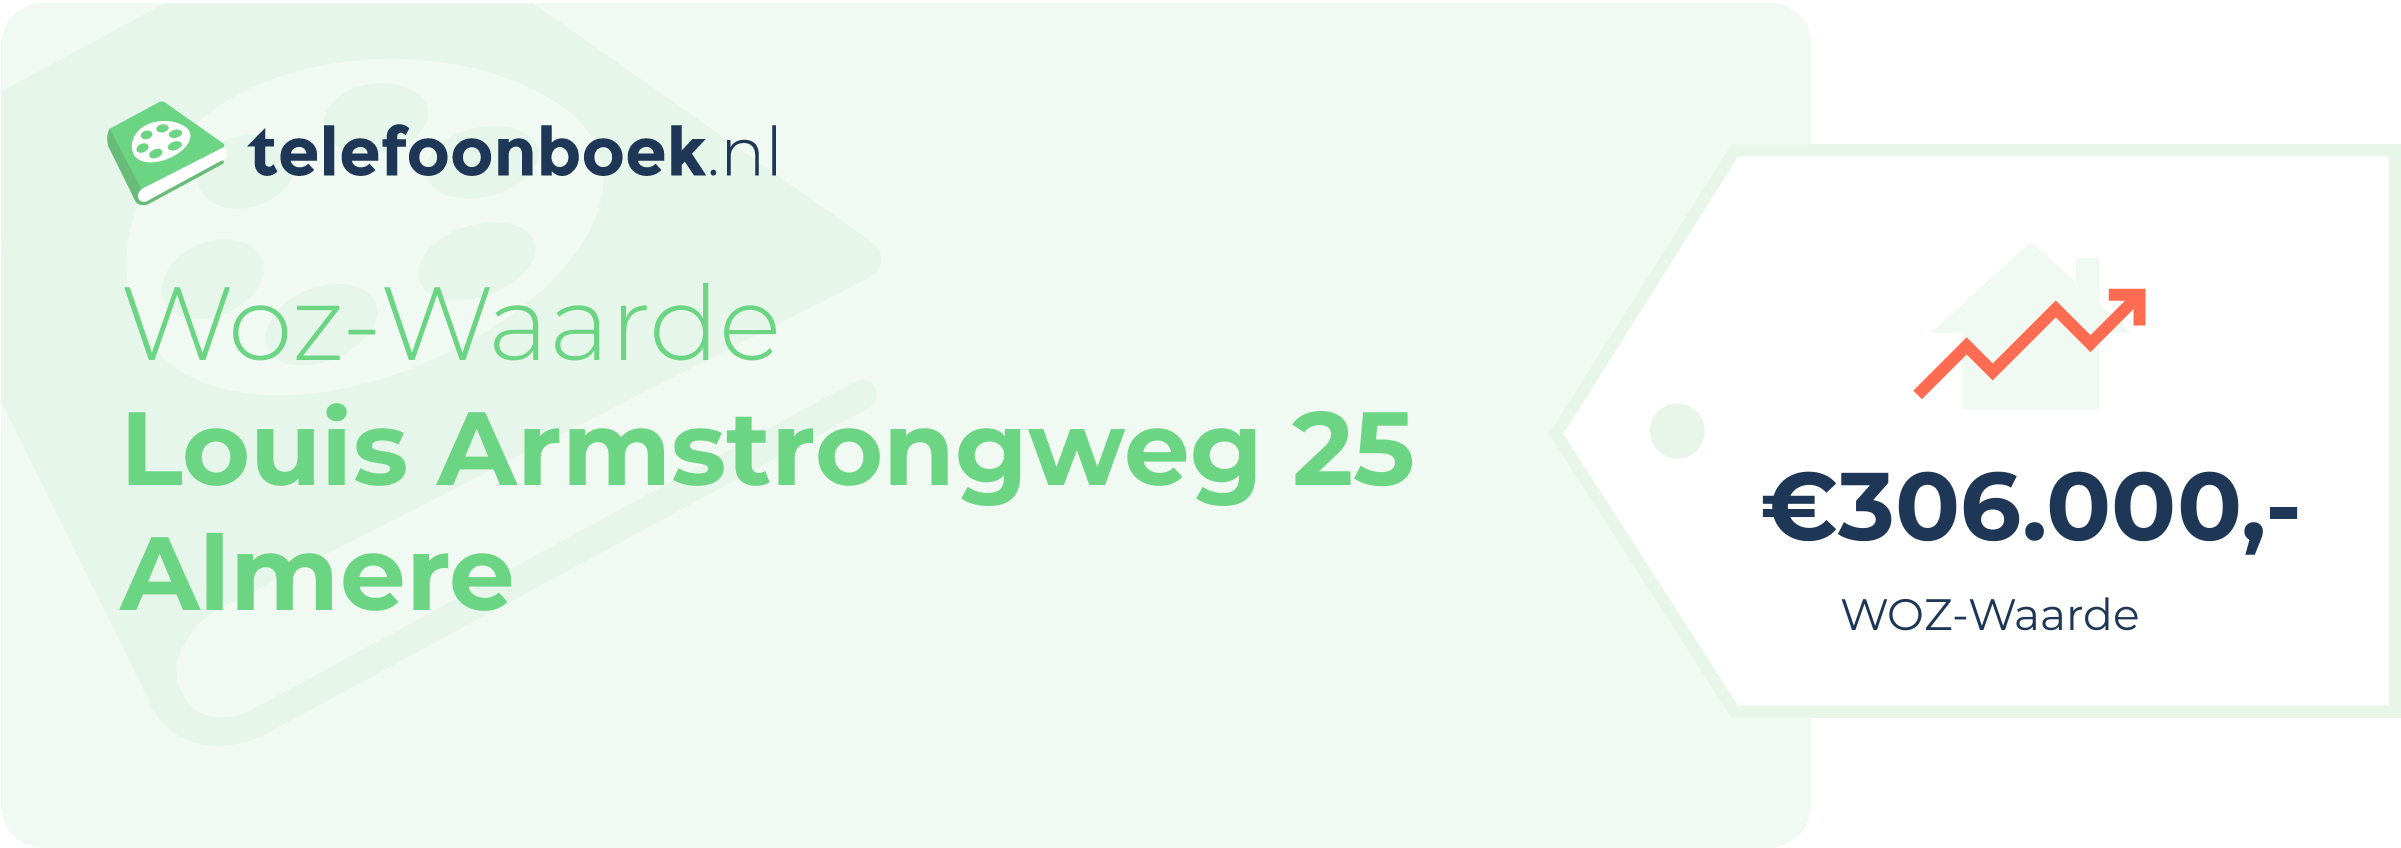 WOZ-waarde Louis Armstrongweg 25 Almere